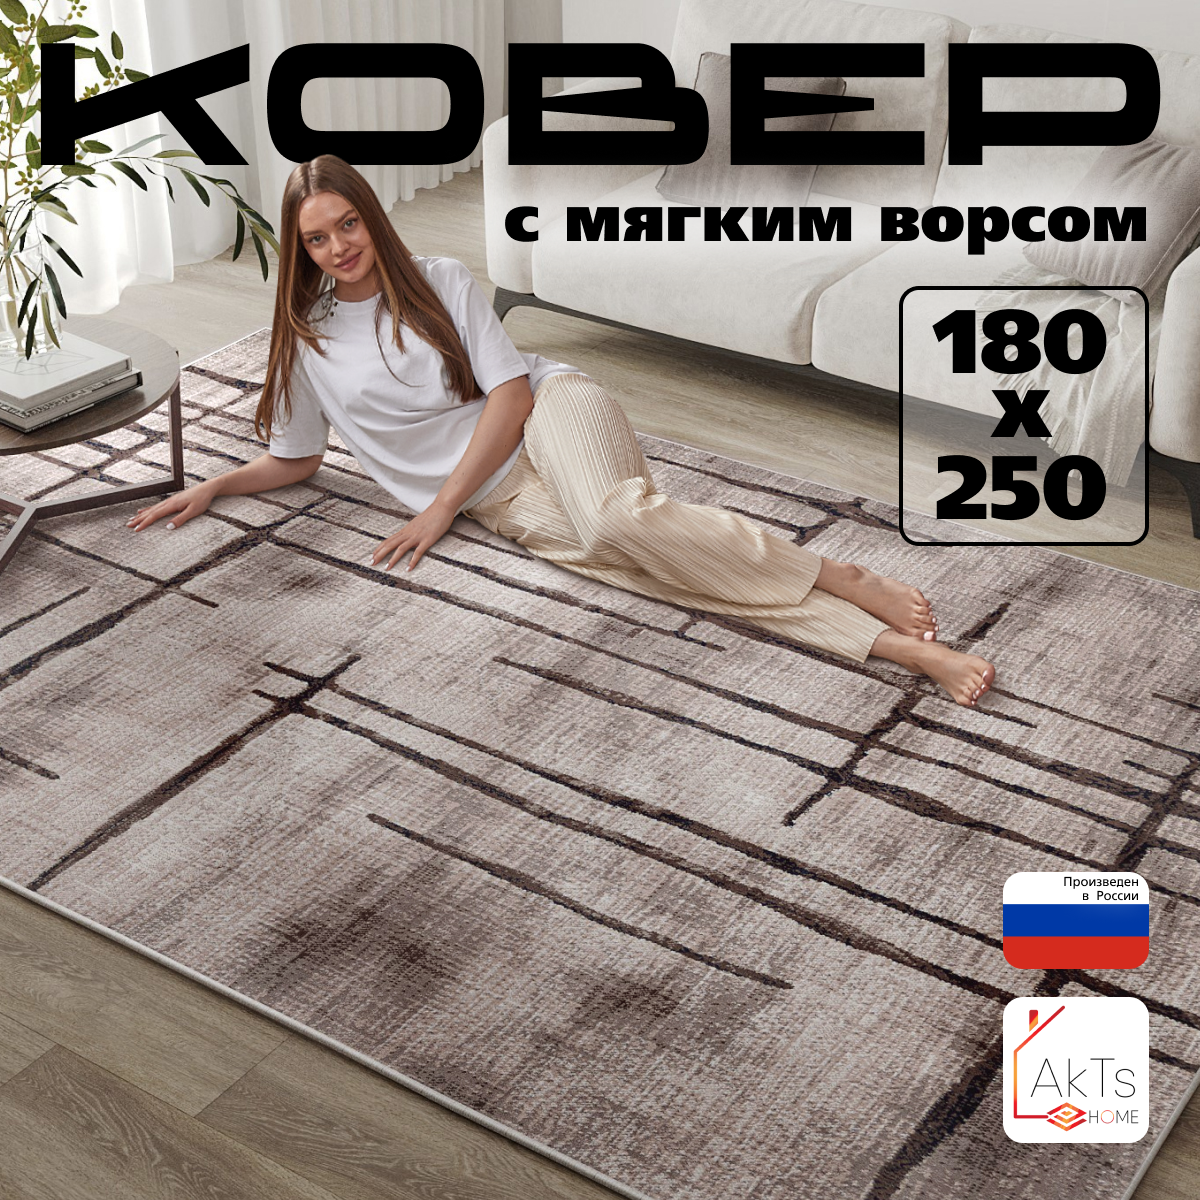 Российский прямоугольный ковер на пол 180 на 250 см в гостиную, зал, спальню, кухню, детскую, прихожую, кабинет, комнату